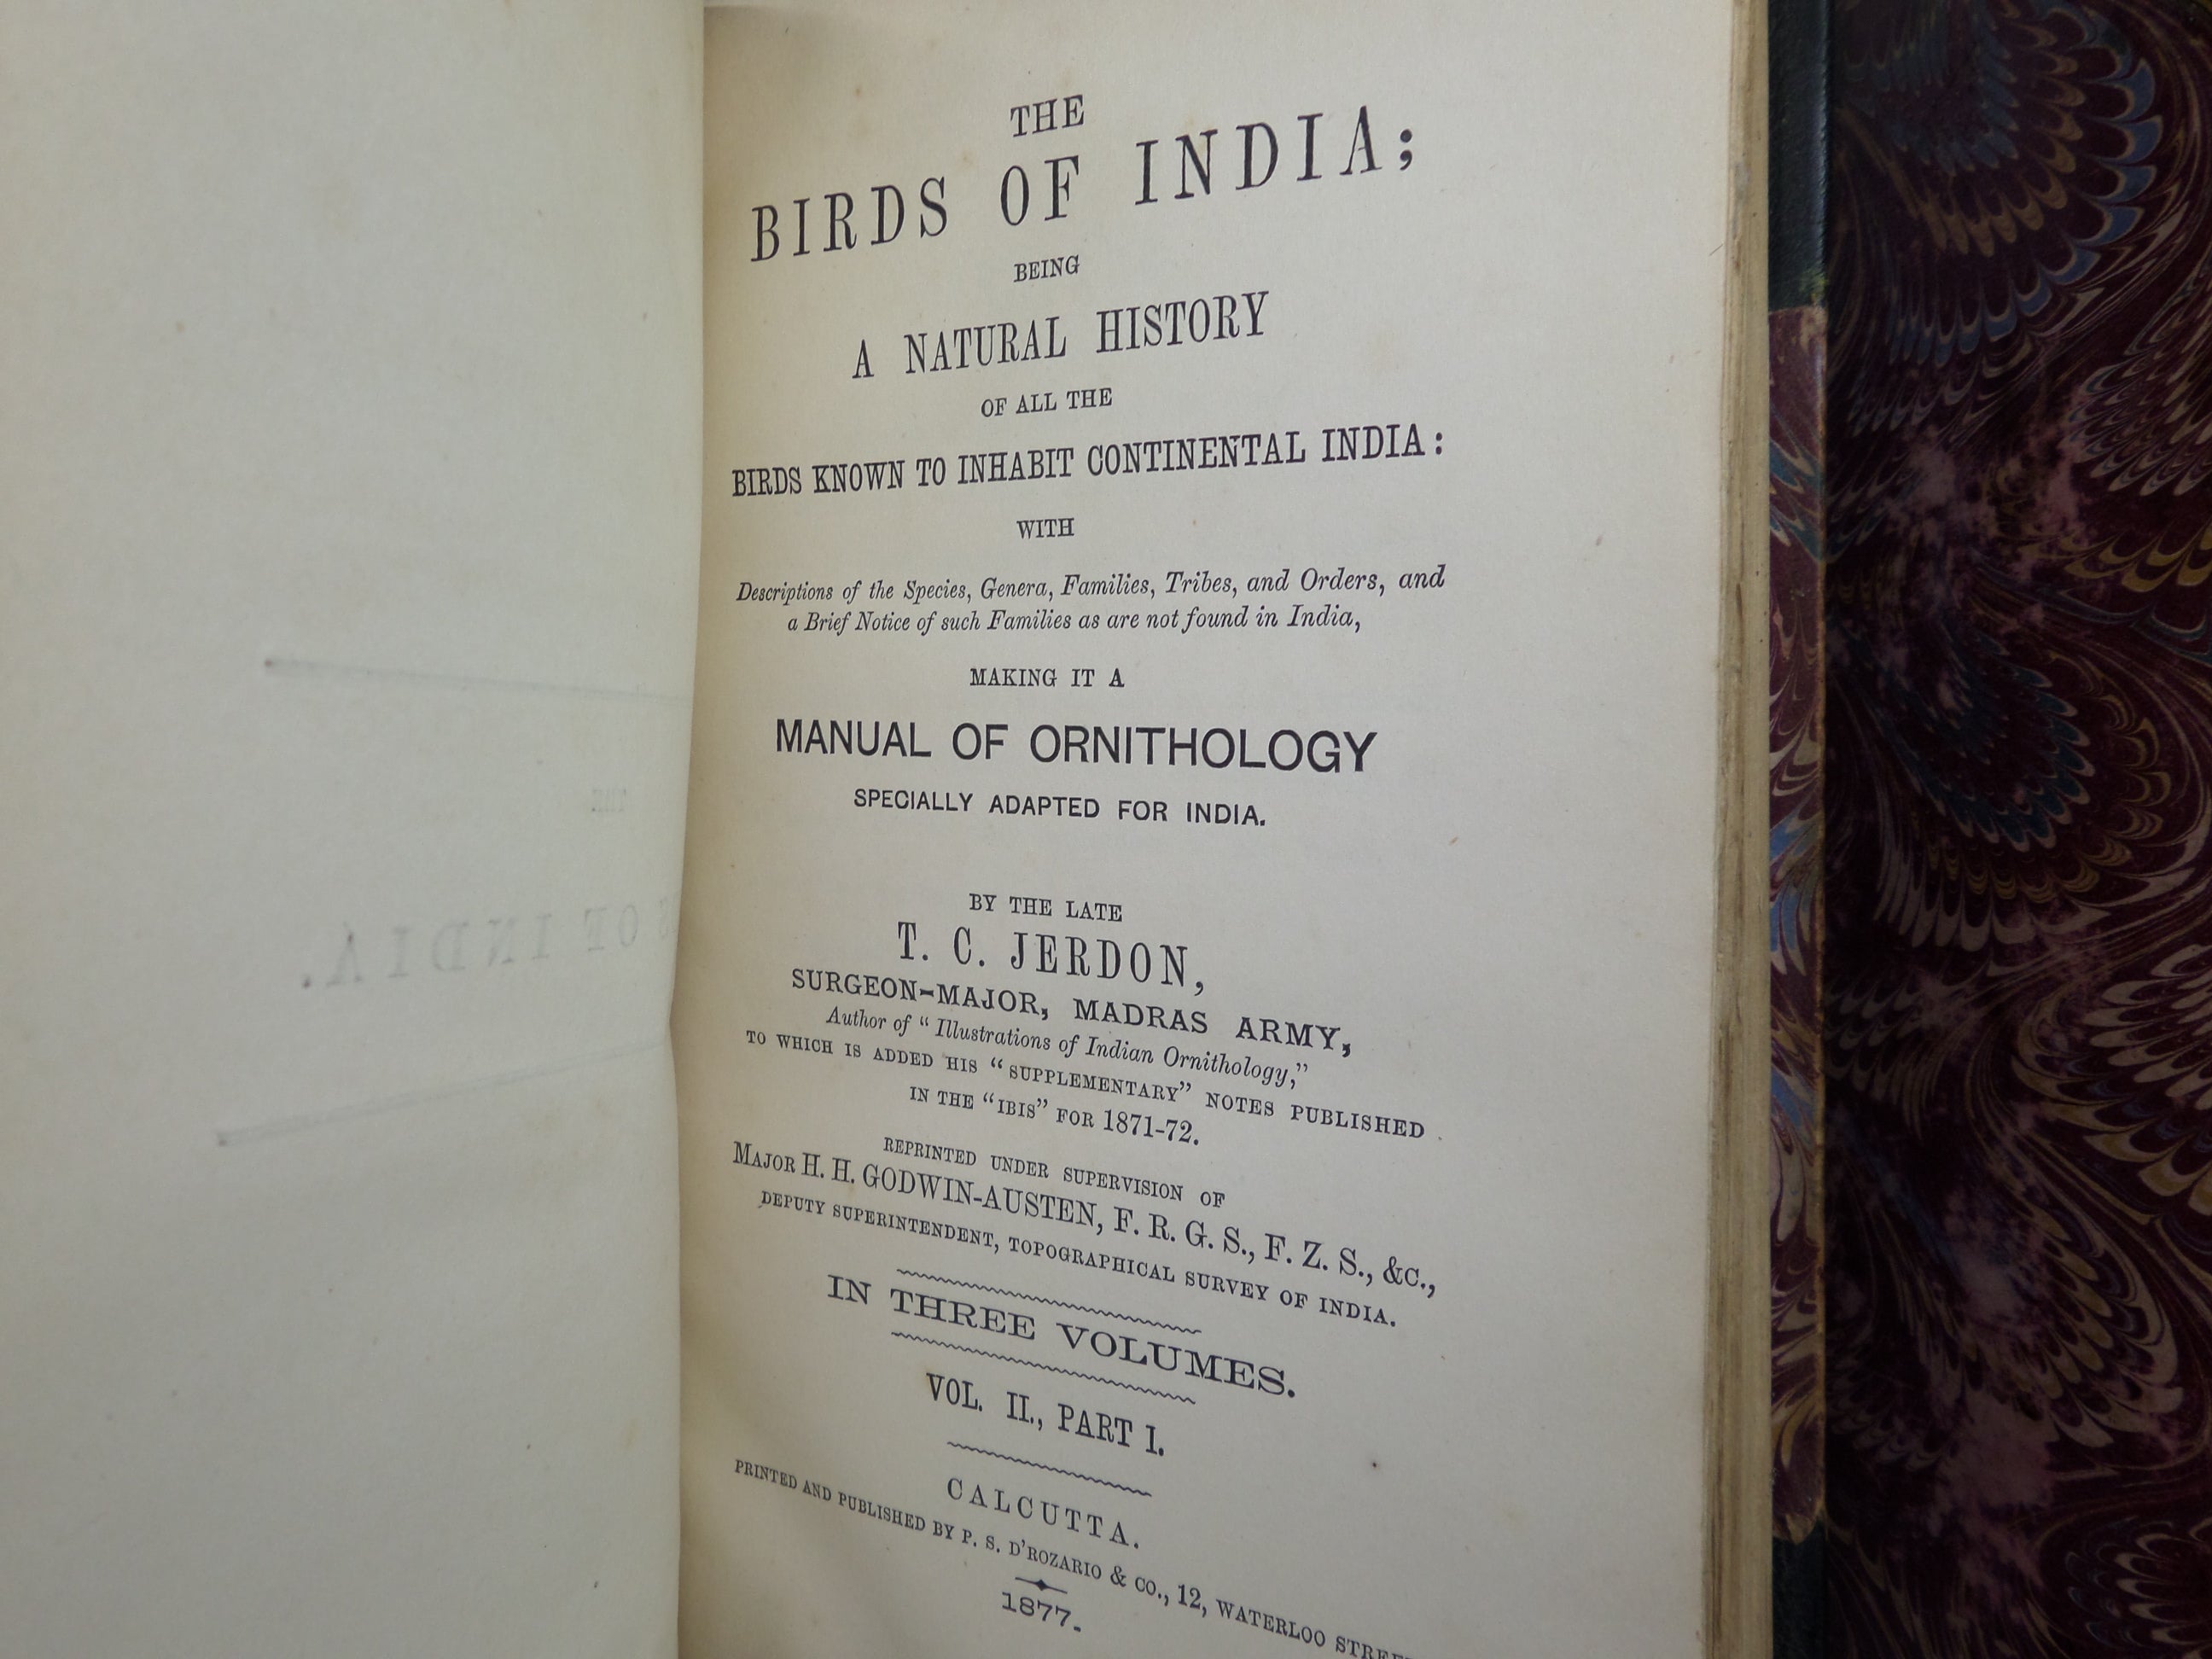 THE BIRDS OF INDIA - MANUAL OF ORNITHOLOGY BY T.C. JERDON 1877 LEATHER-BOUND SET